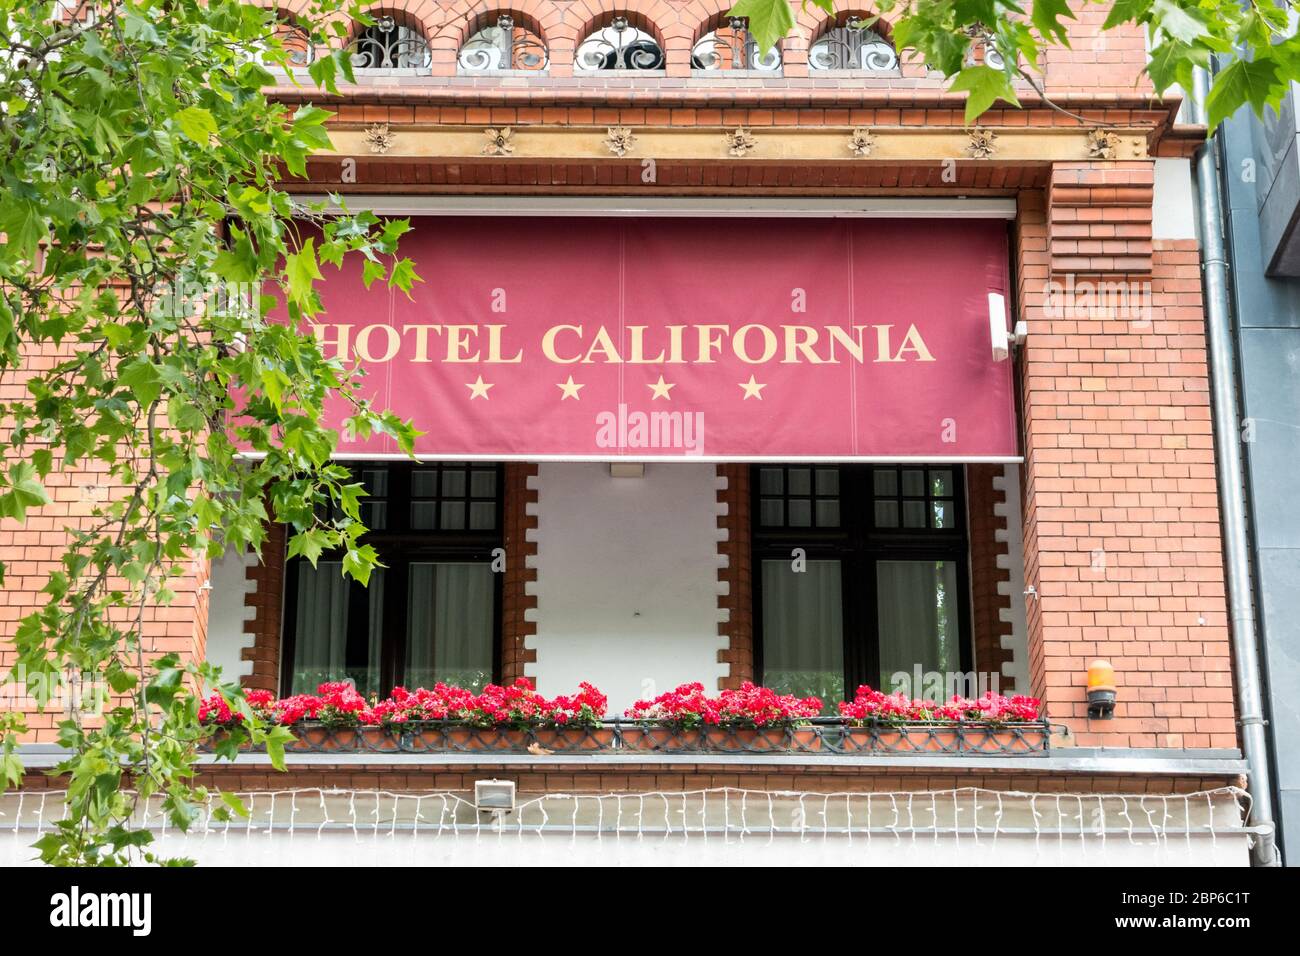 BERLIN - Juni 05, 2016: Vier Sterne Hotel California auf der berühmten Einkaufsstraße von Berlin - Kurfürstendamm. Stockfoto